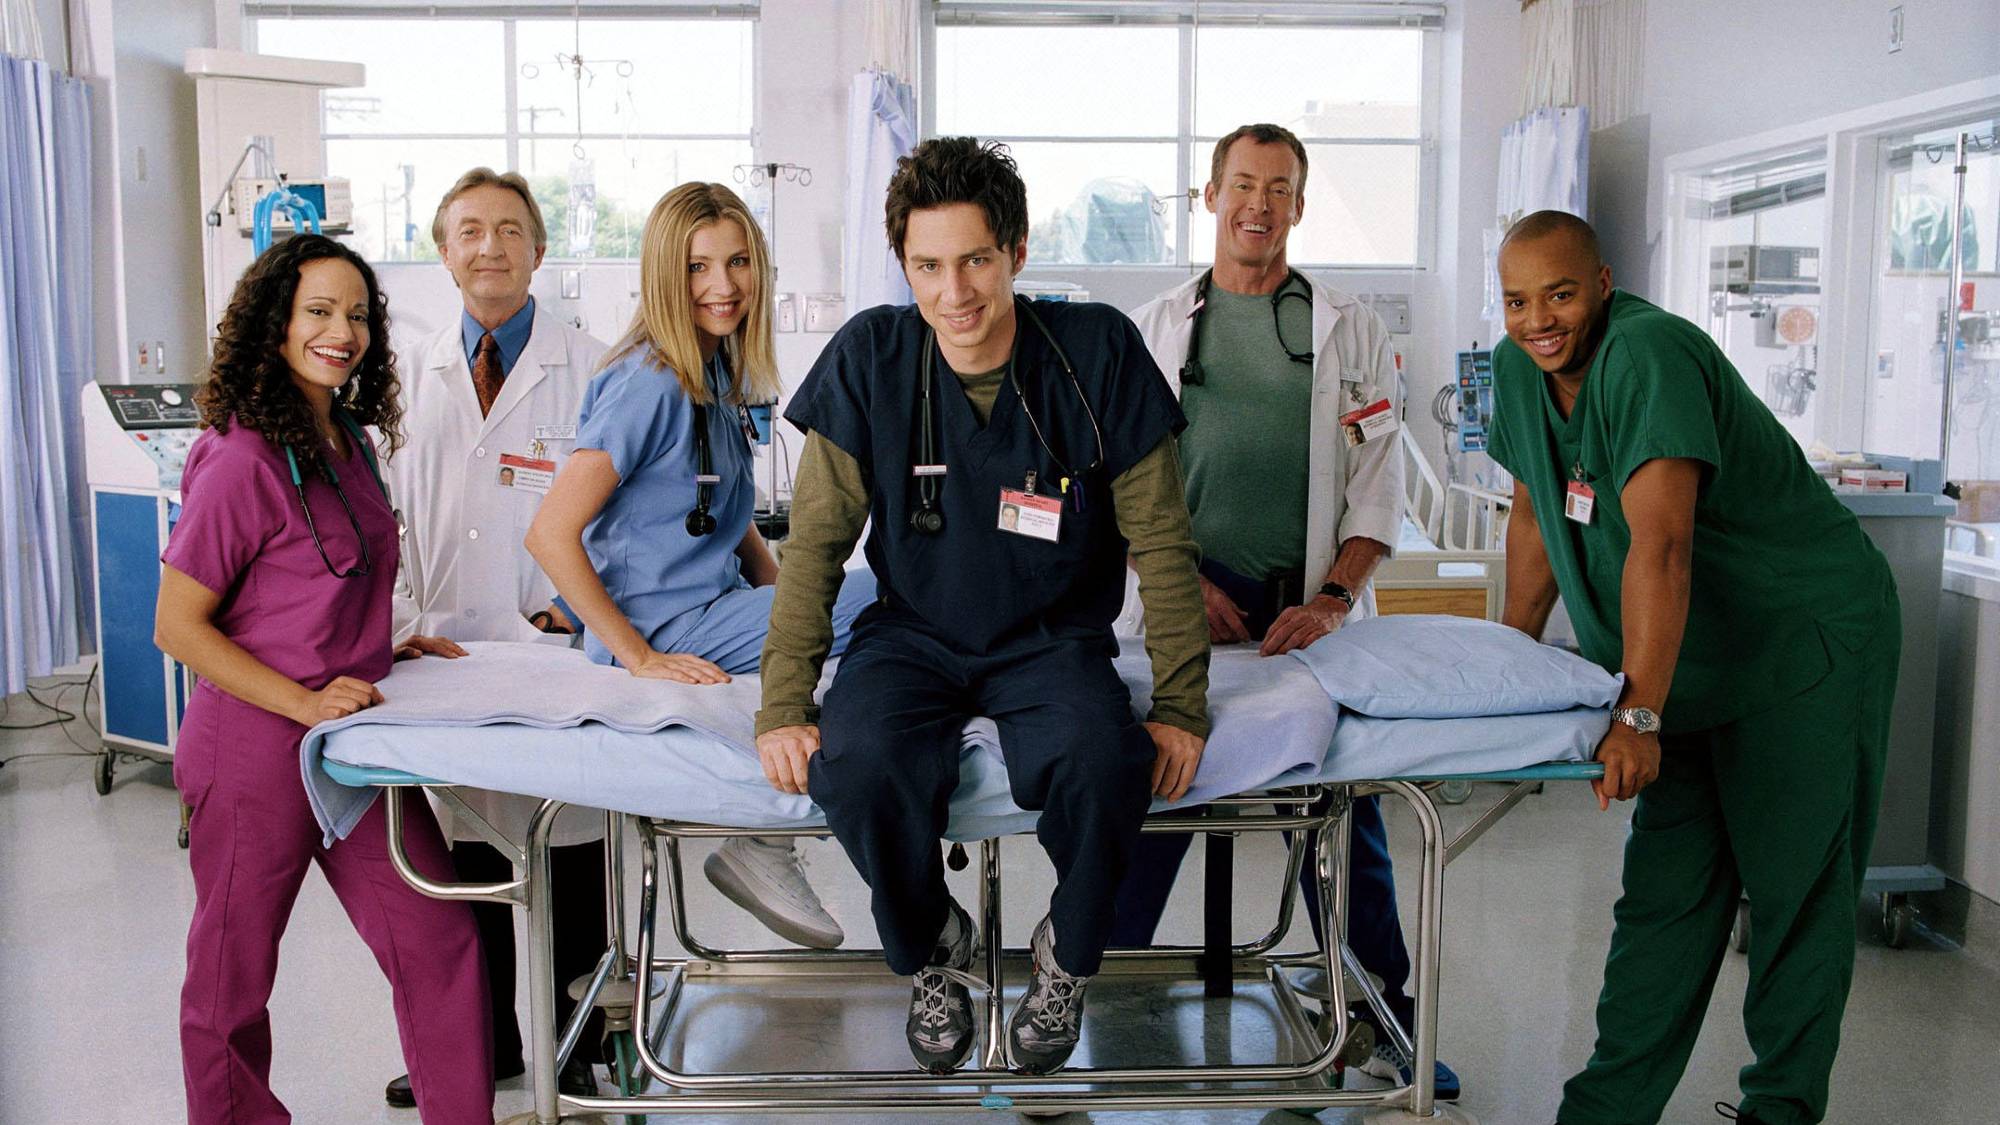 Miembros del elenco de Scrubs [L-R] JUDY REYES como la enfermera Carla Espinosa, KEN JENKINS como el Dr. Bob Kelso, SARAH CHALKE como el Dr. Elliot Reid, ZACH BRAFF como el Dr. J.D. Dorian, JOHN C. MCGINLEY como el Dr. Perry Cox, DONALD FAISON como el Dr. Chris Turk